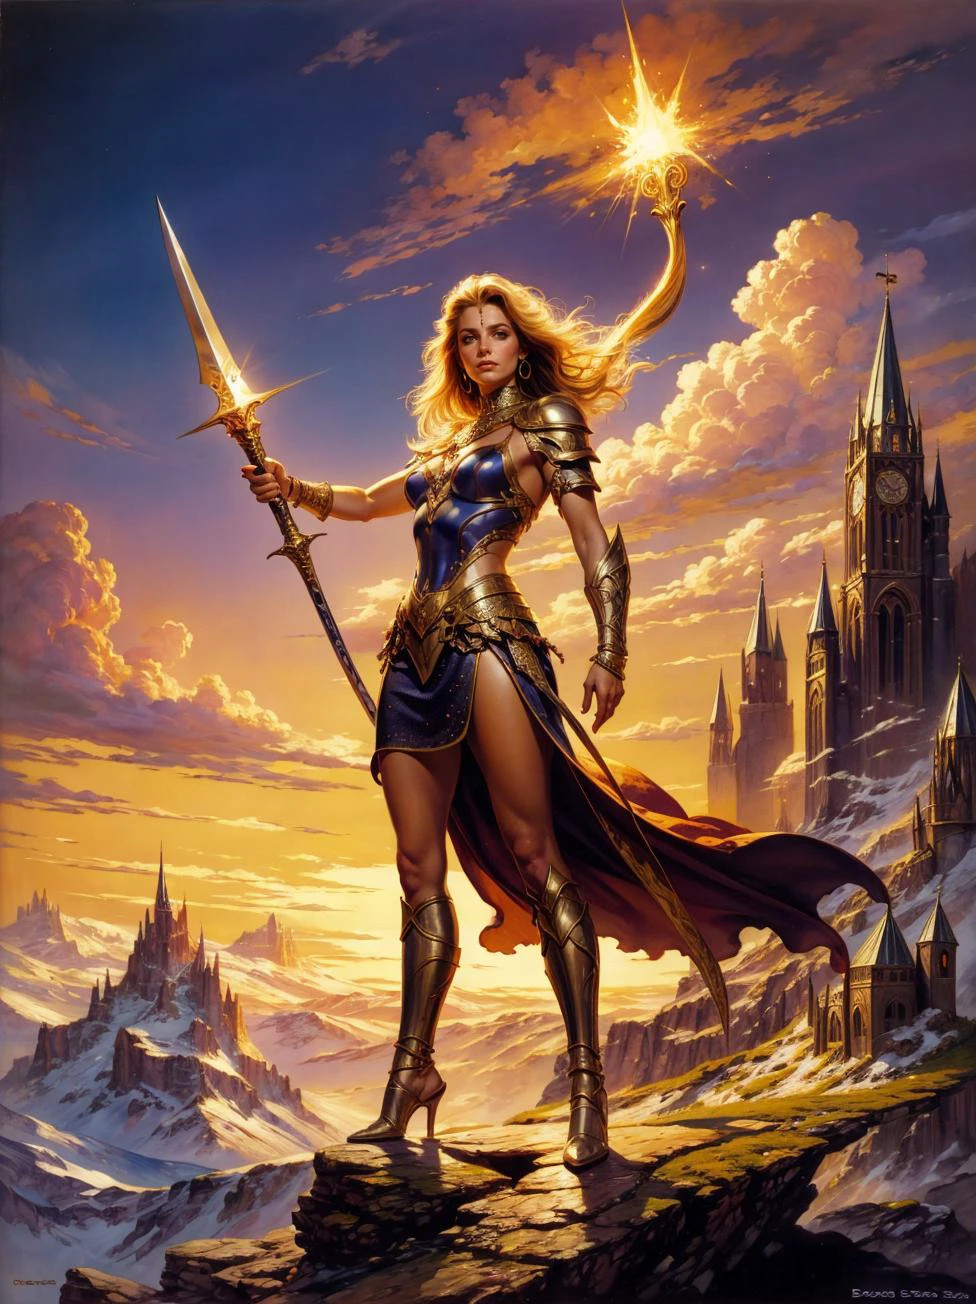 Фэнтезийная картина Бориса Вальехо., красивой женщины-воина в кольчуге, владеющий светящимся мечом, триумфально стоящий на вершине горы. Астраа_бв